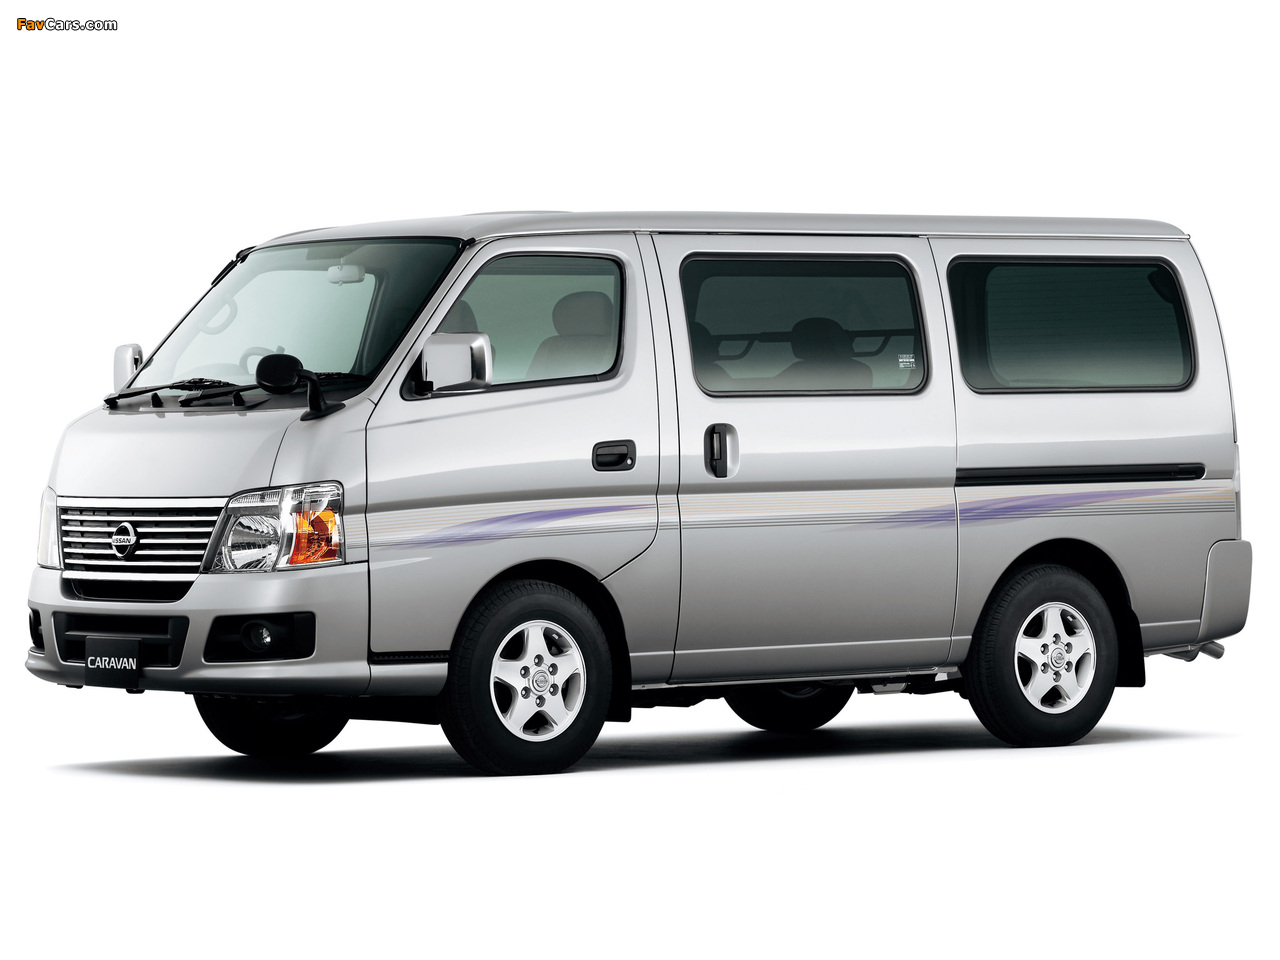 Nissan Caravan (E25) 2005 photos (1280 x 960)